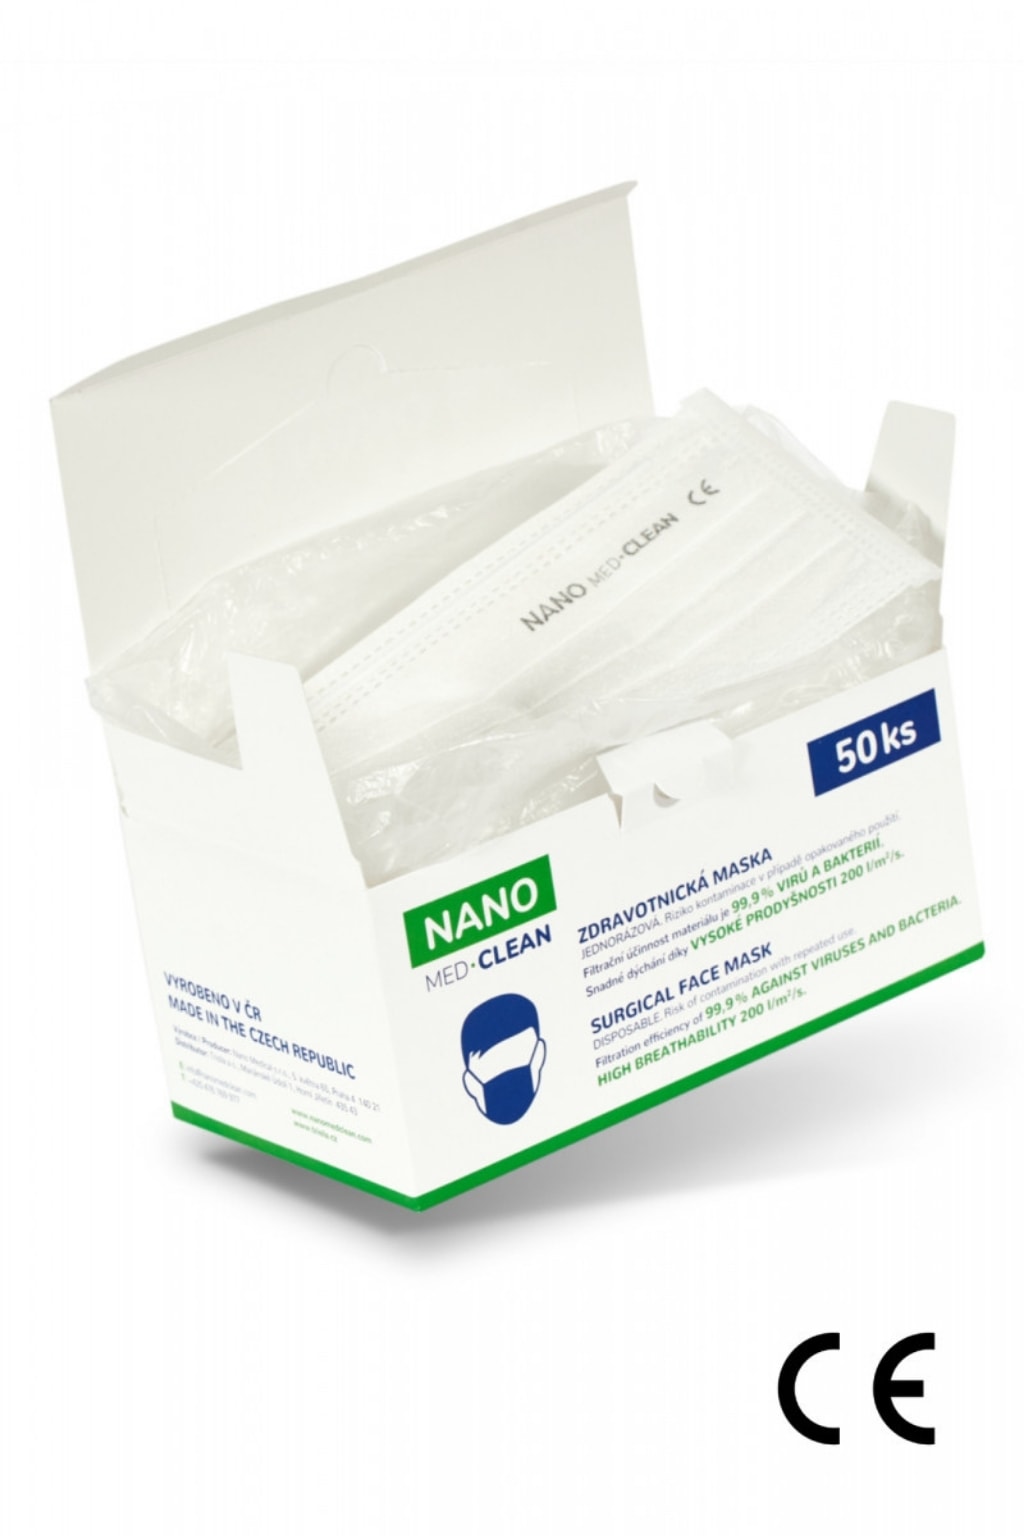 NANO MEDICAL Nanovlákenné roušky Nano Med.Clean 50 ks balení 23,98 Kč / ks / viditelné označení nano